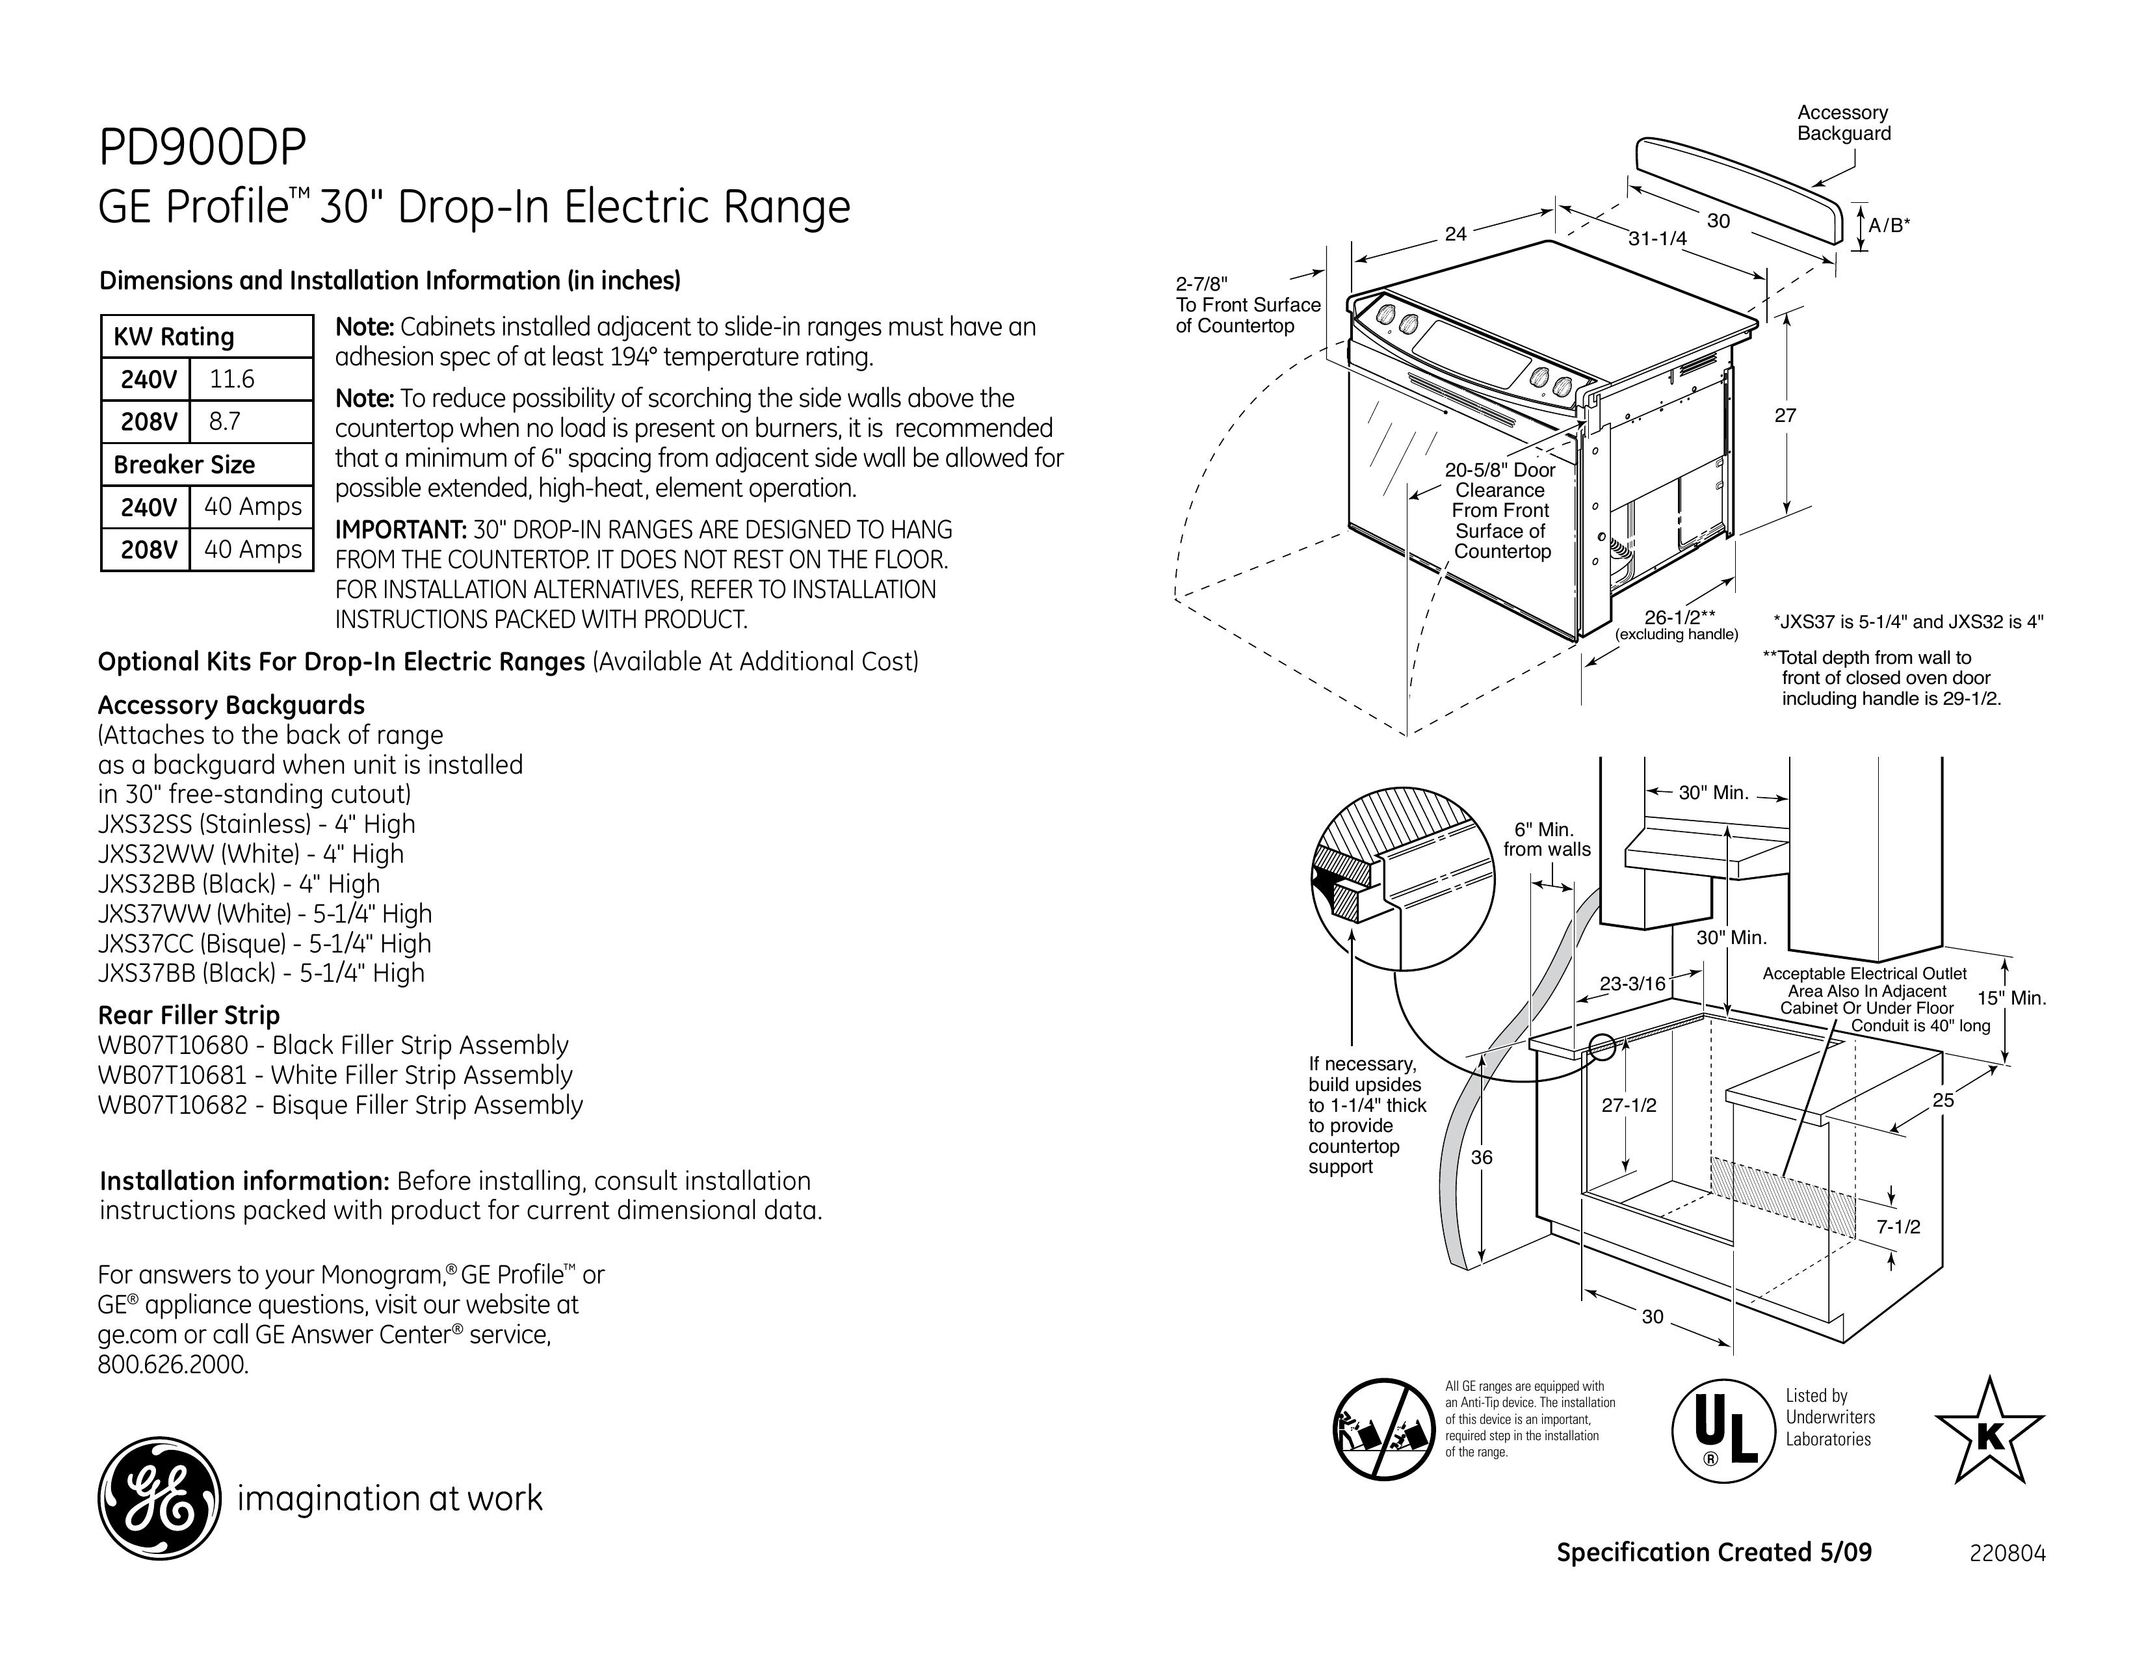 GE PD900DP Welder User Manual